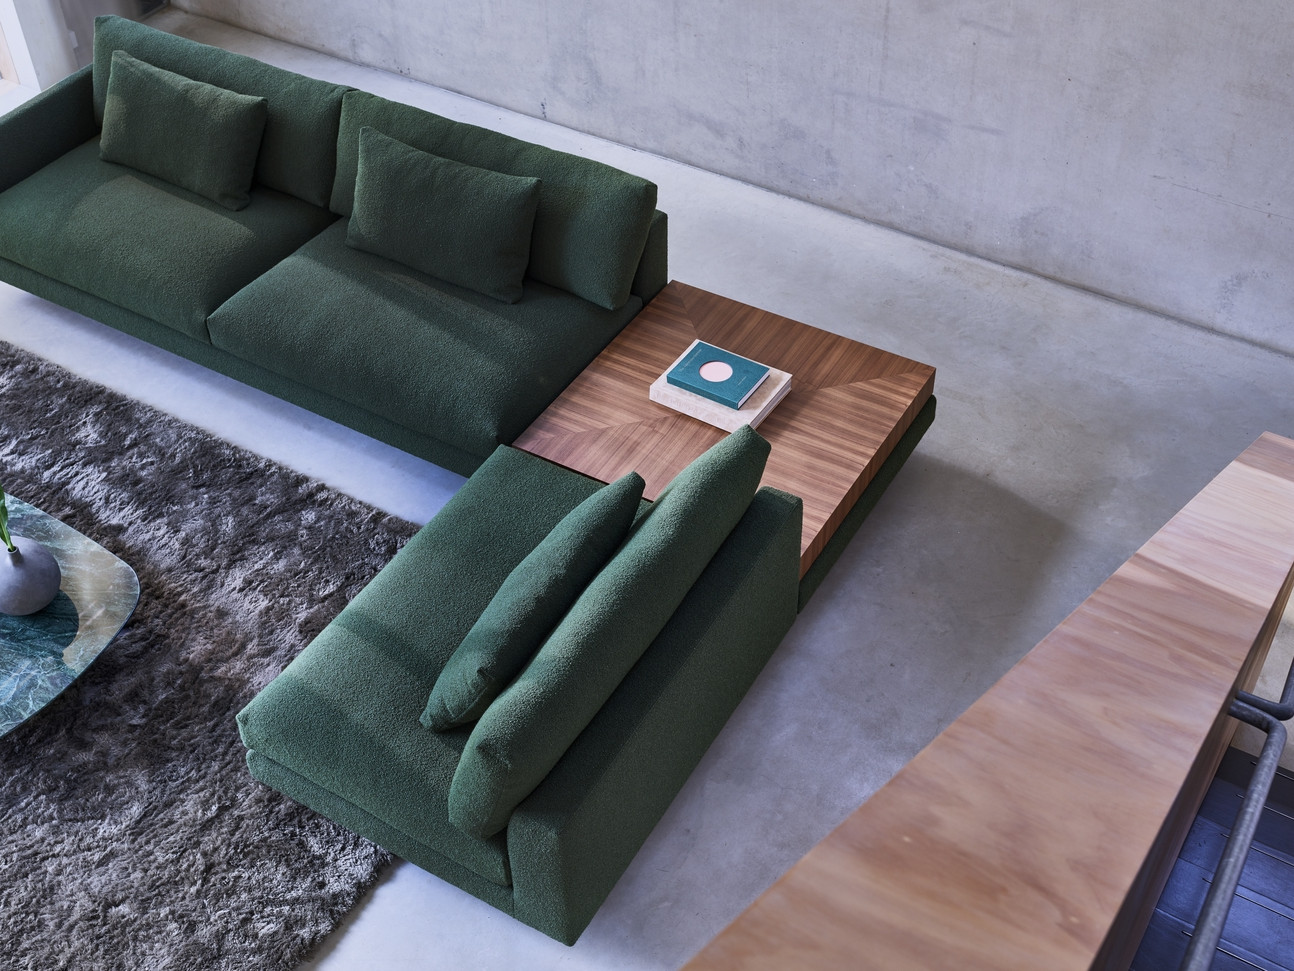 Luxe meubelen van diverse merken als Artifort, Gelderland, Montis en Leolux